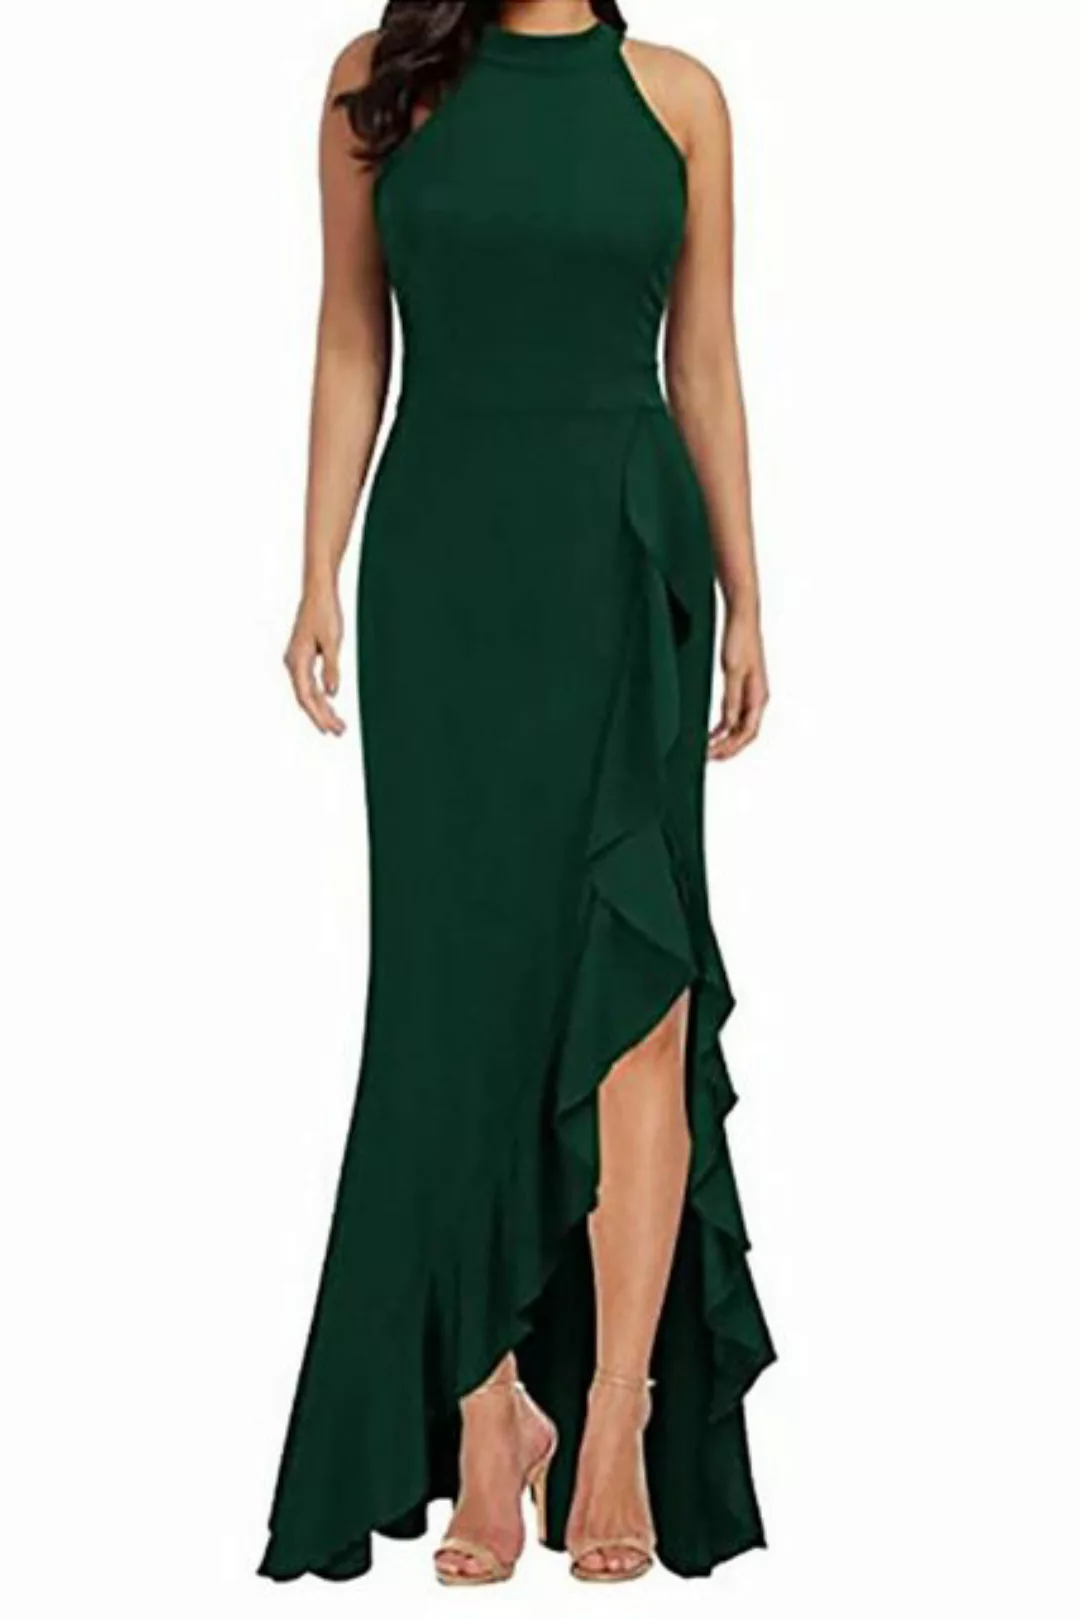 JDMGZSR Abendkleid Damen hohe Taille Abendkleid Freizeit einfarbig Strandkl günstig online kaufen